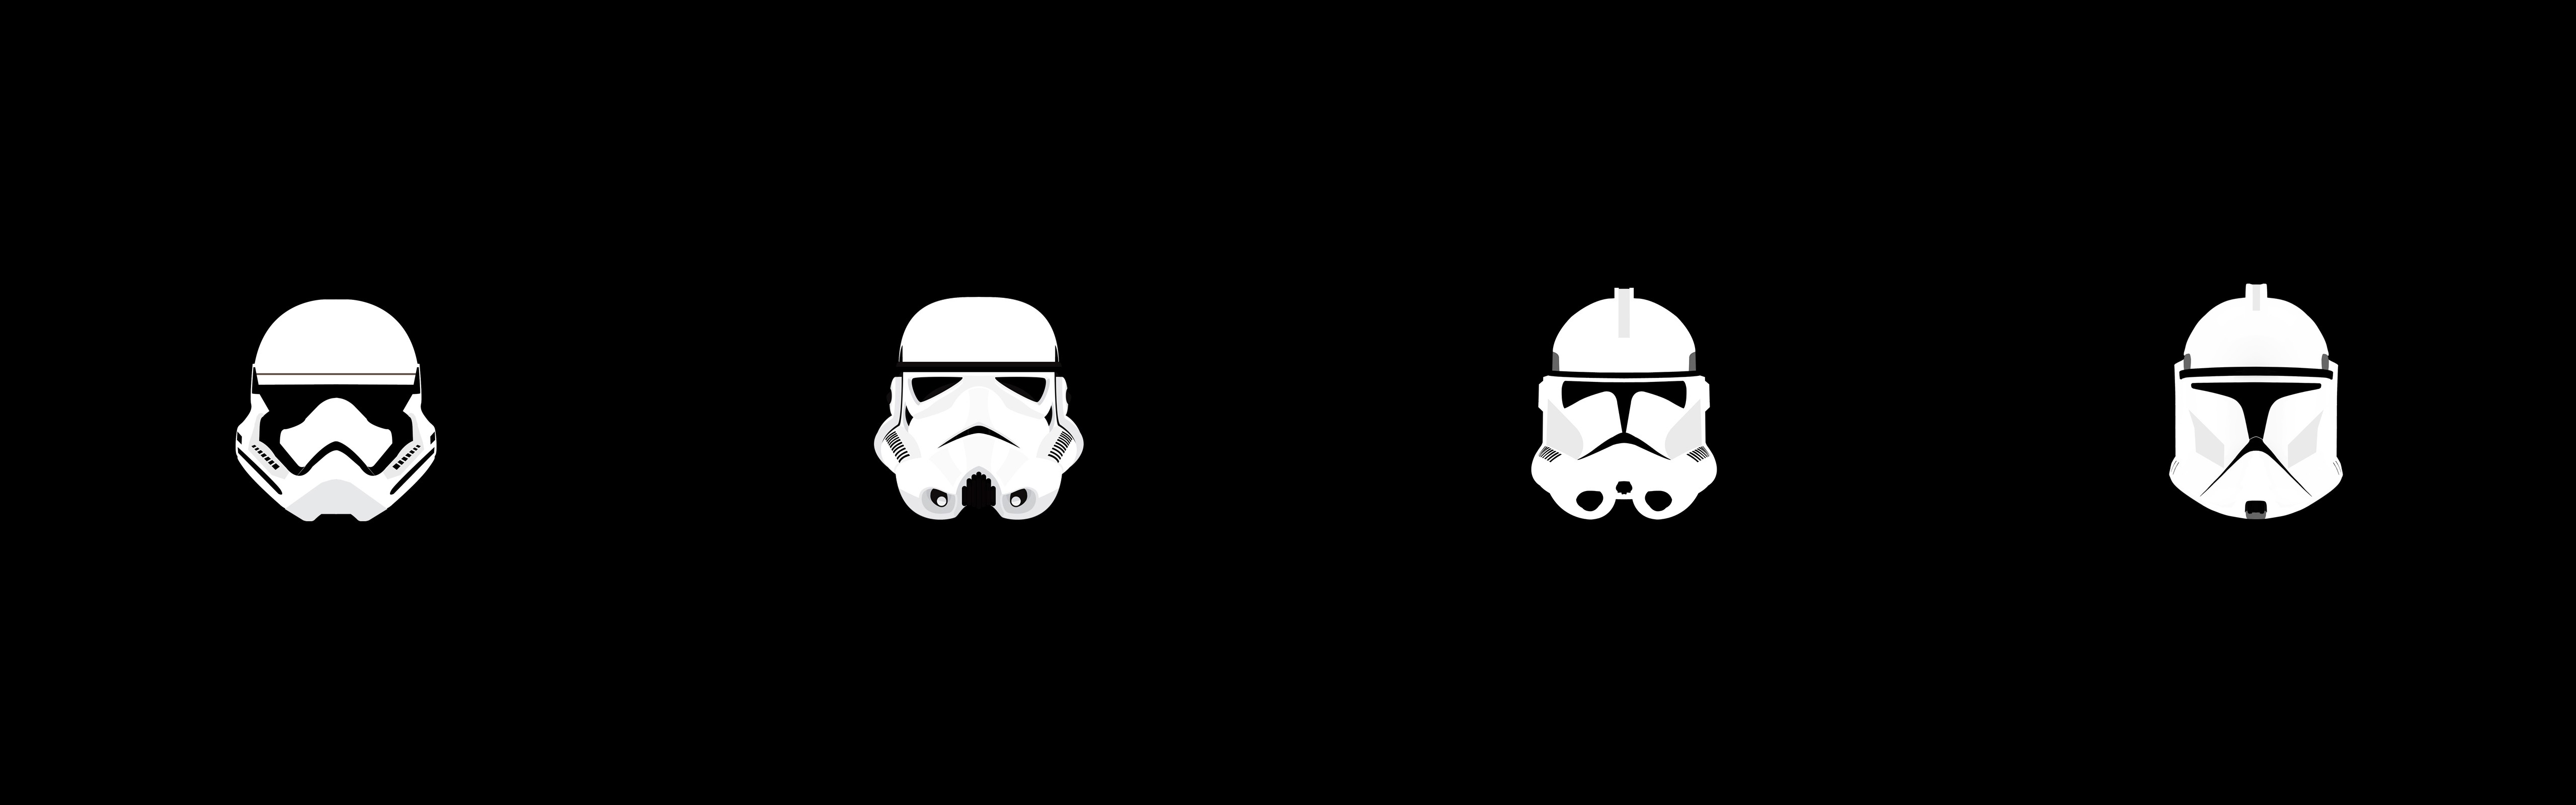 Star Wars, Clone Trooper, Stormtrooper, Helmet, Minimalism, Multiple Display Wallpaper